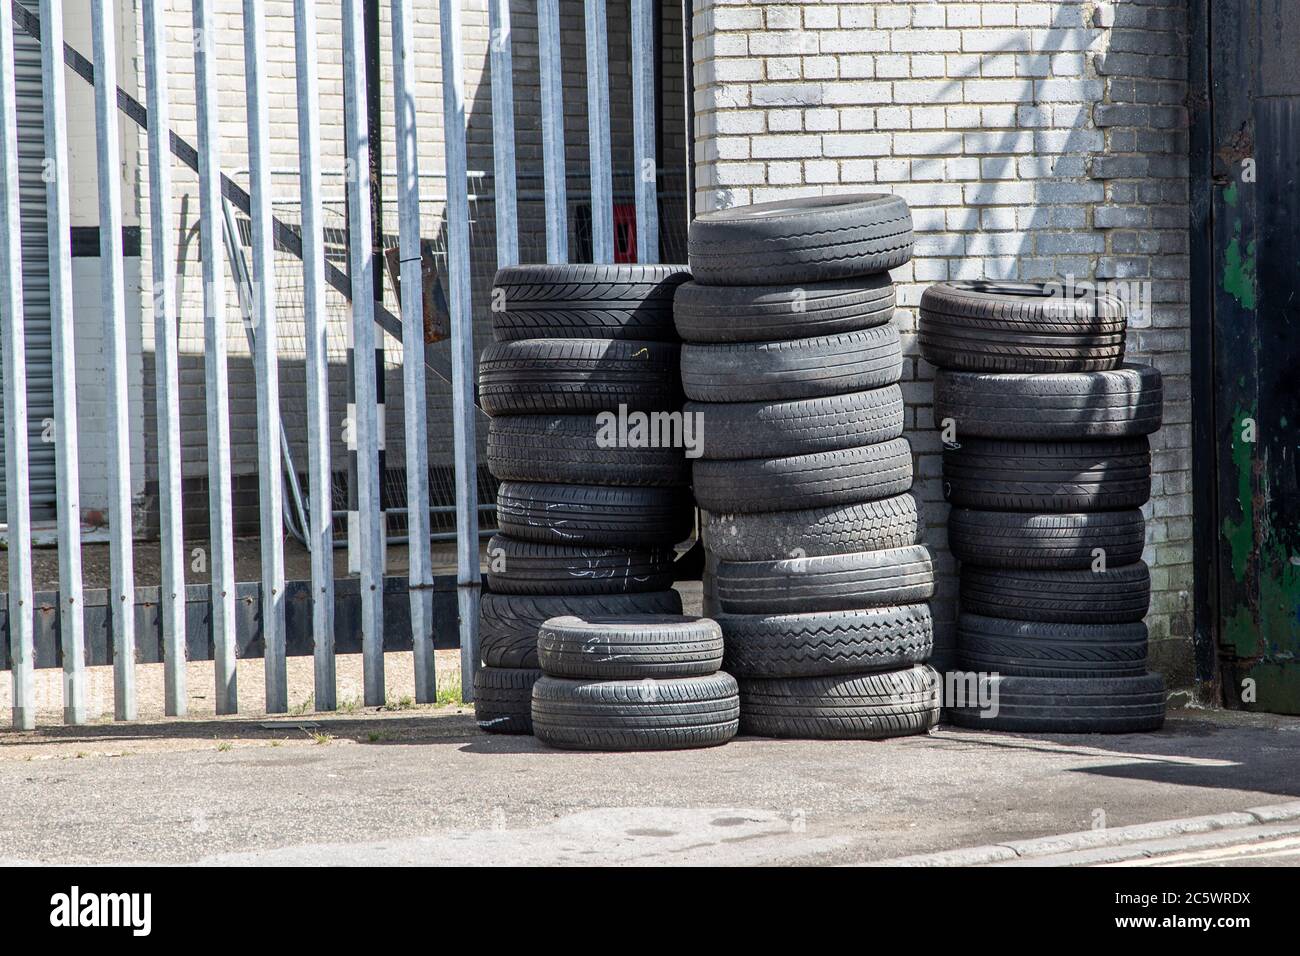 Gebrauchte Autoreifen oder Reifen übereinander gestapelt außerhalb einer Garage oder Werkstatt Stockfoto